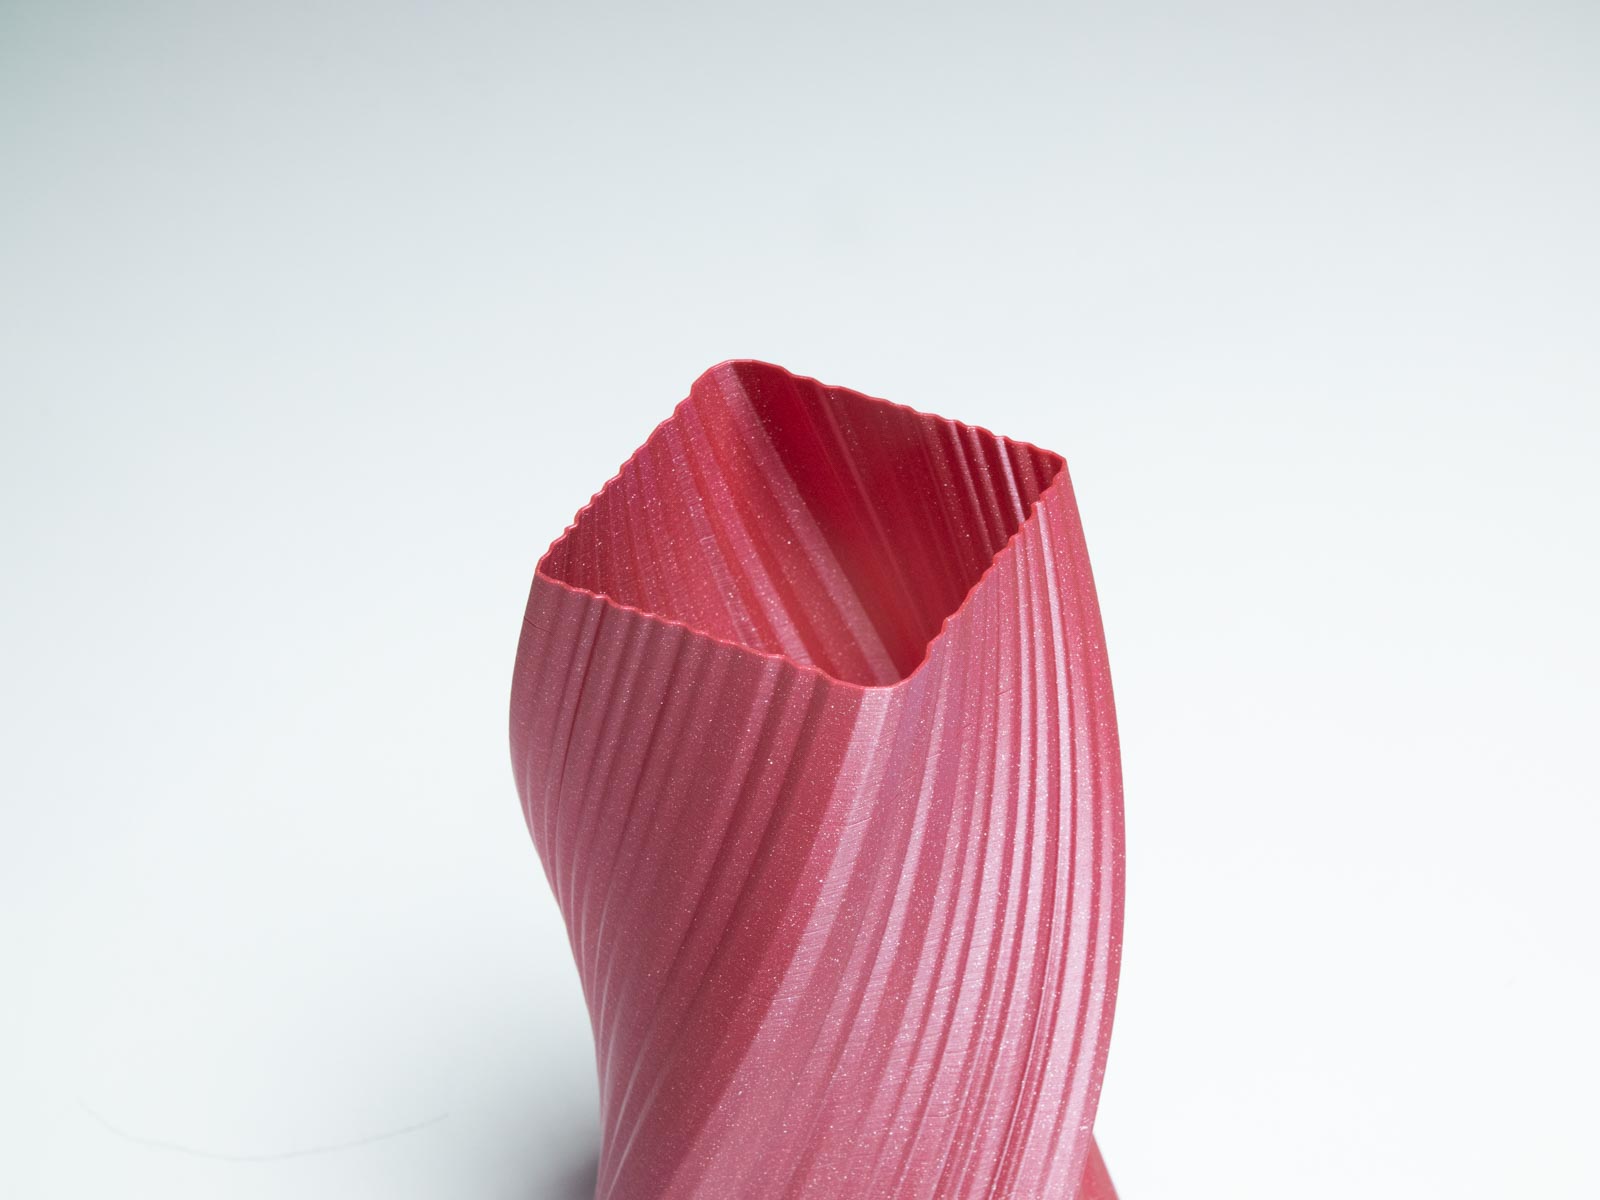 3D Printed Spiral Vase BREE